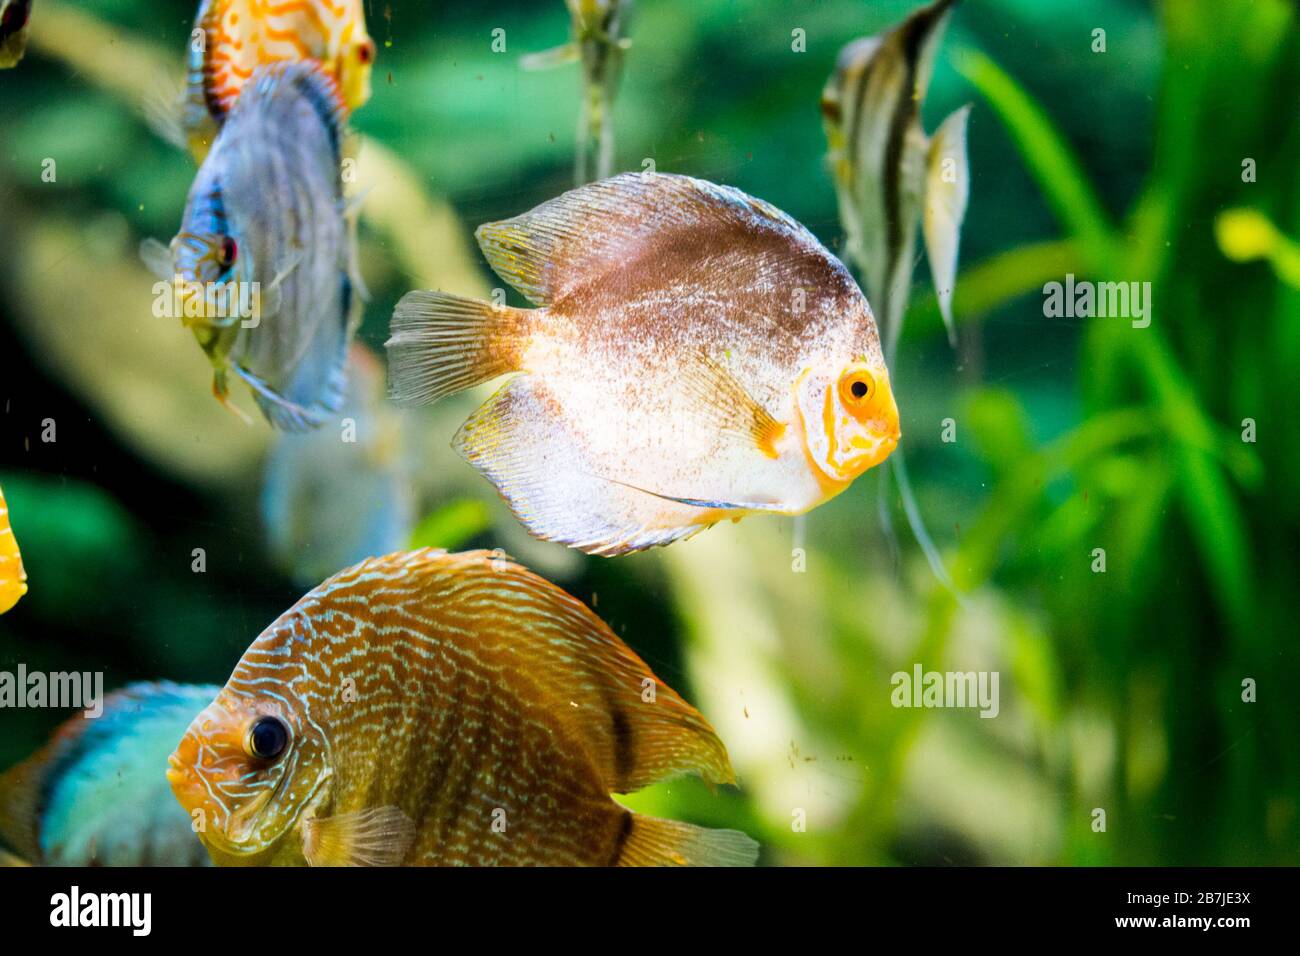 discus fish in aquarium, tropical fish. Symphysodon discus from